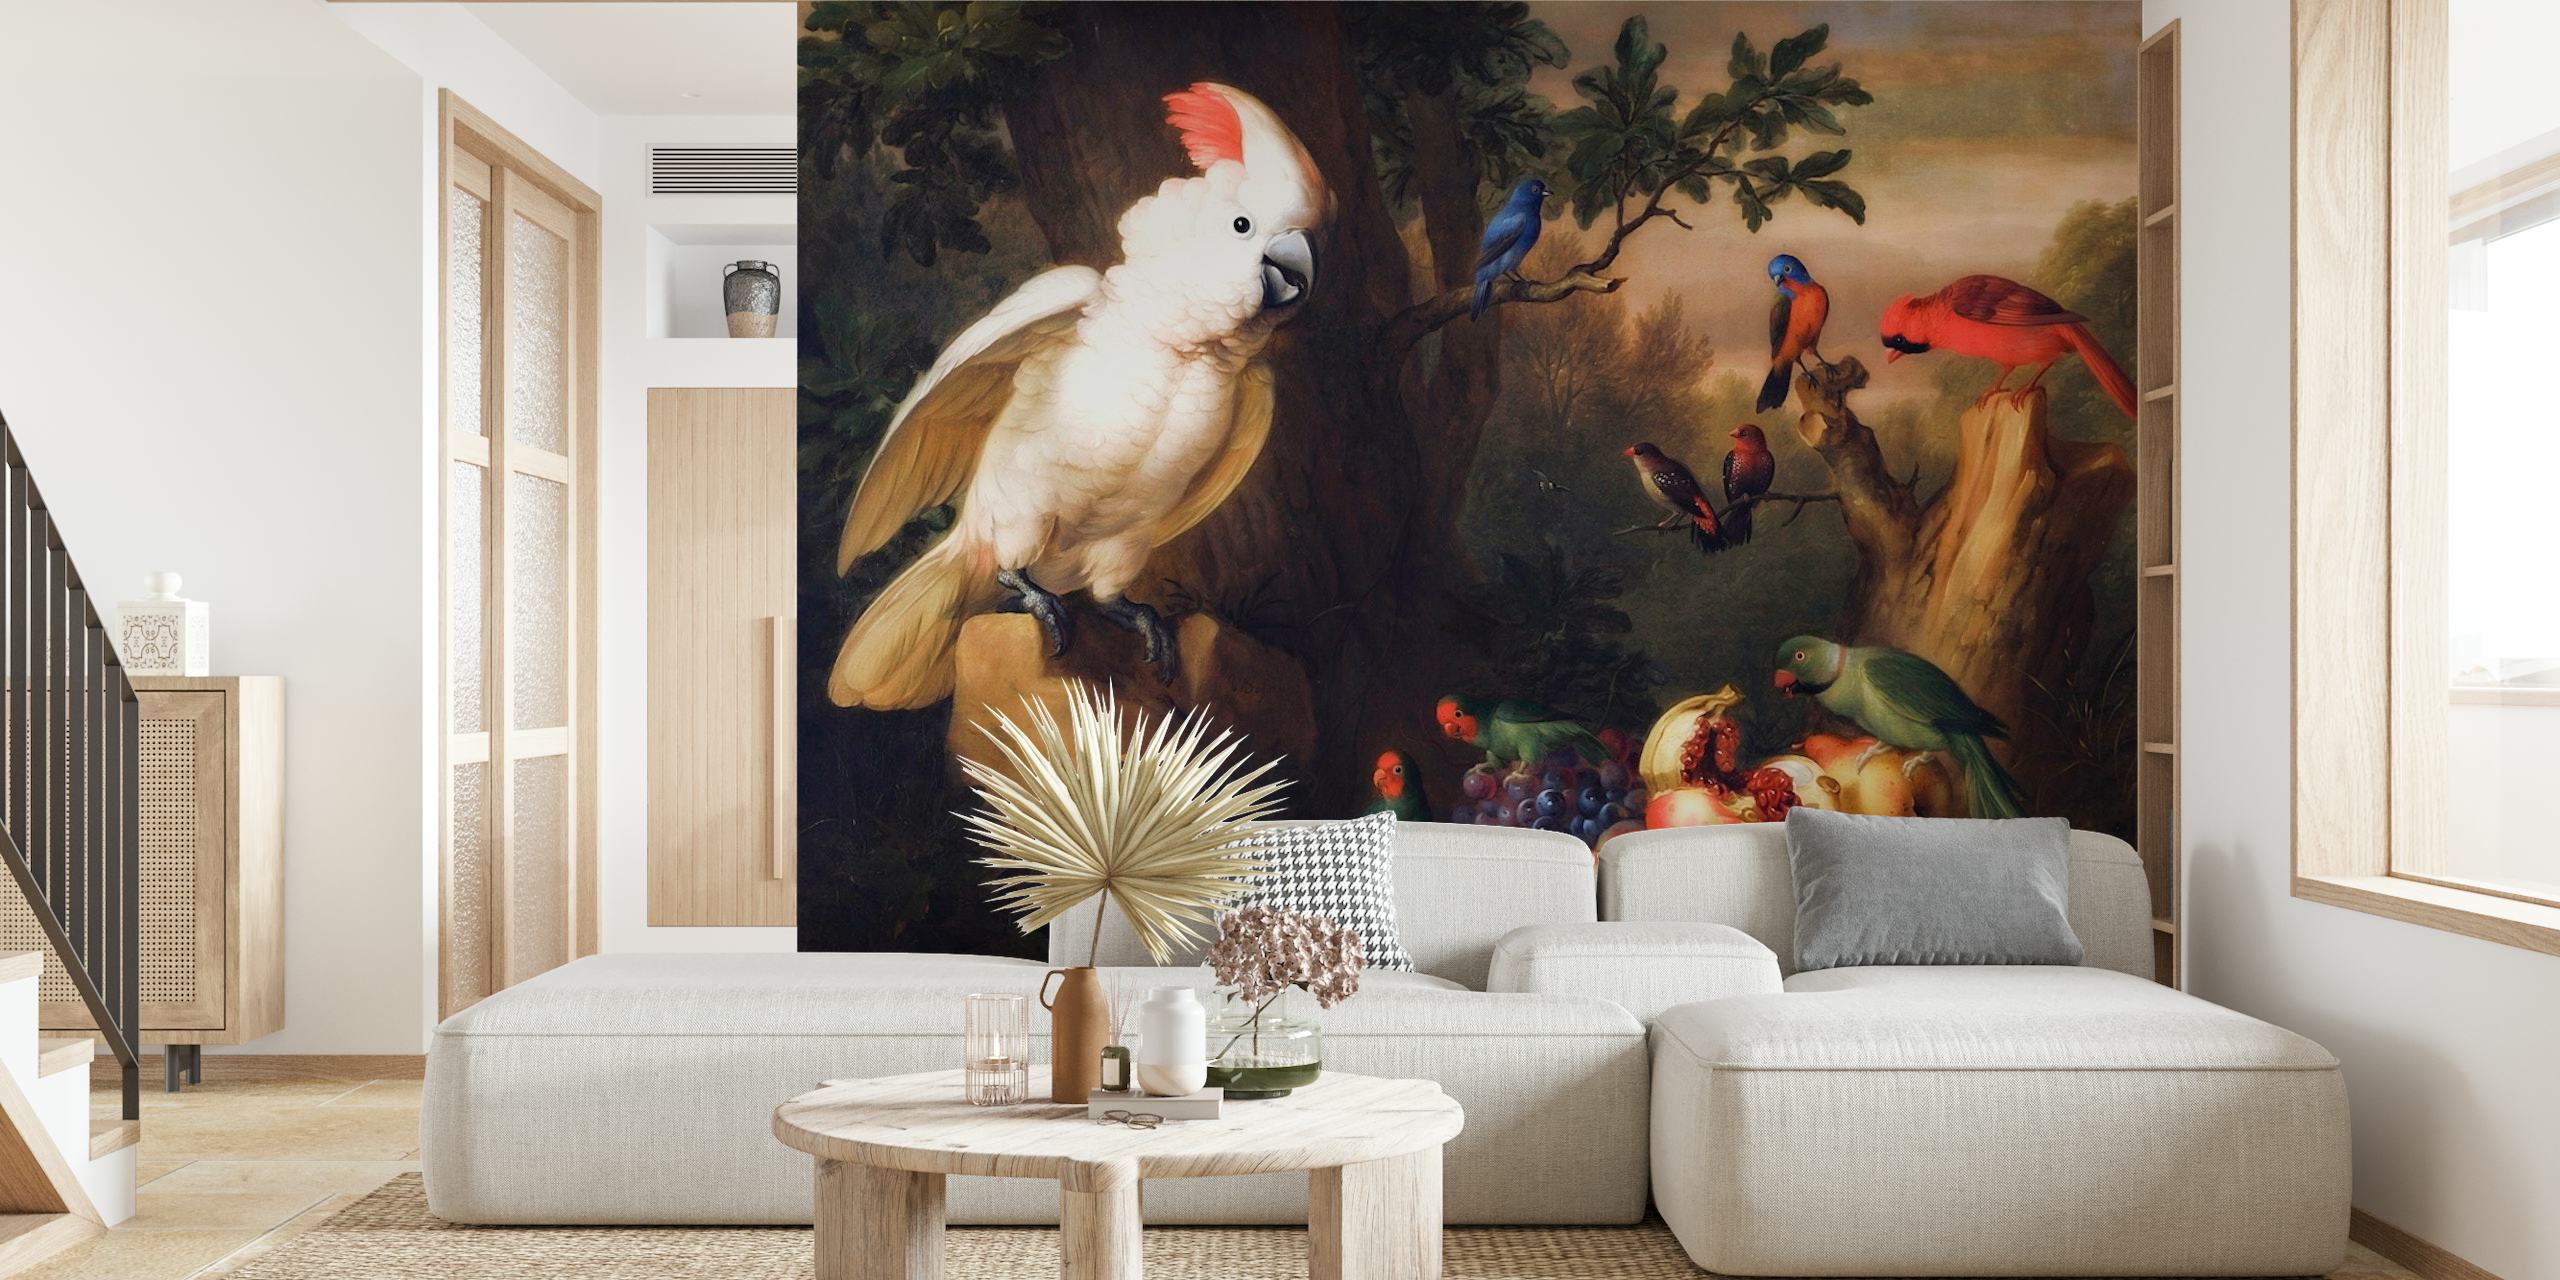 Zidna slika u baroknom stilu sa starinskim tropskim pticama i raskošnim vrtnim krajolikom